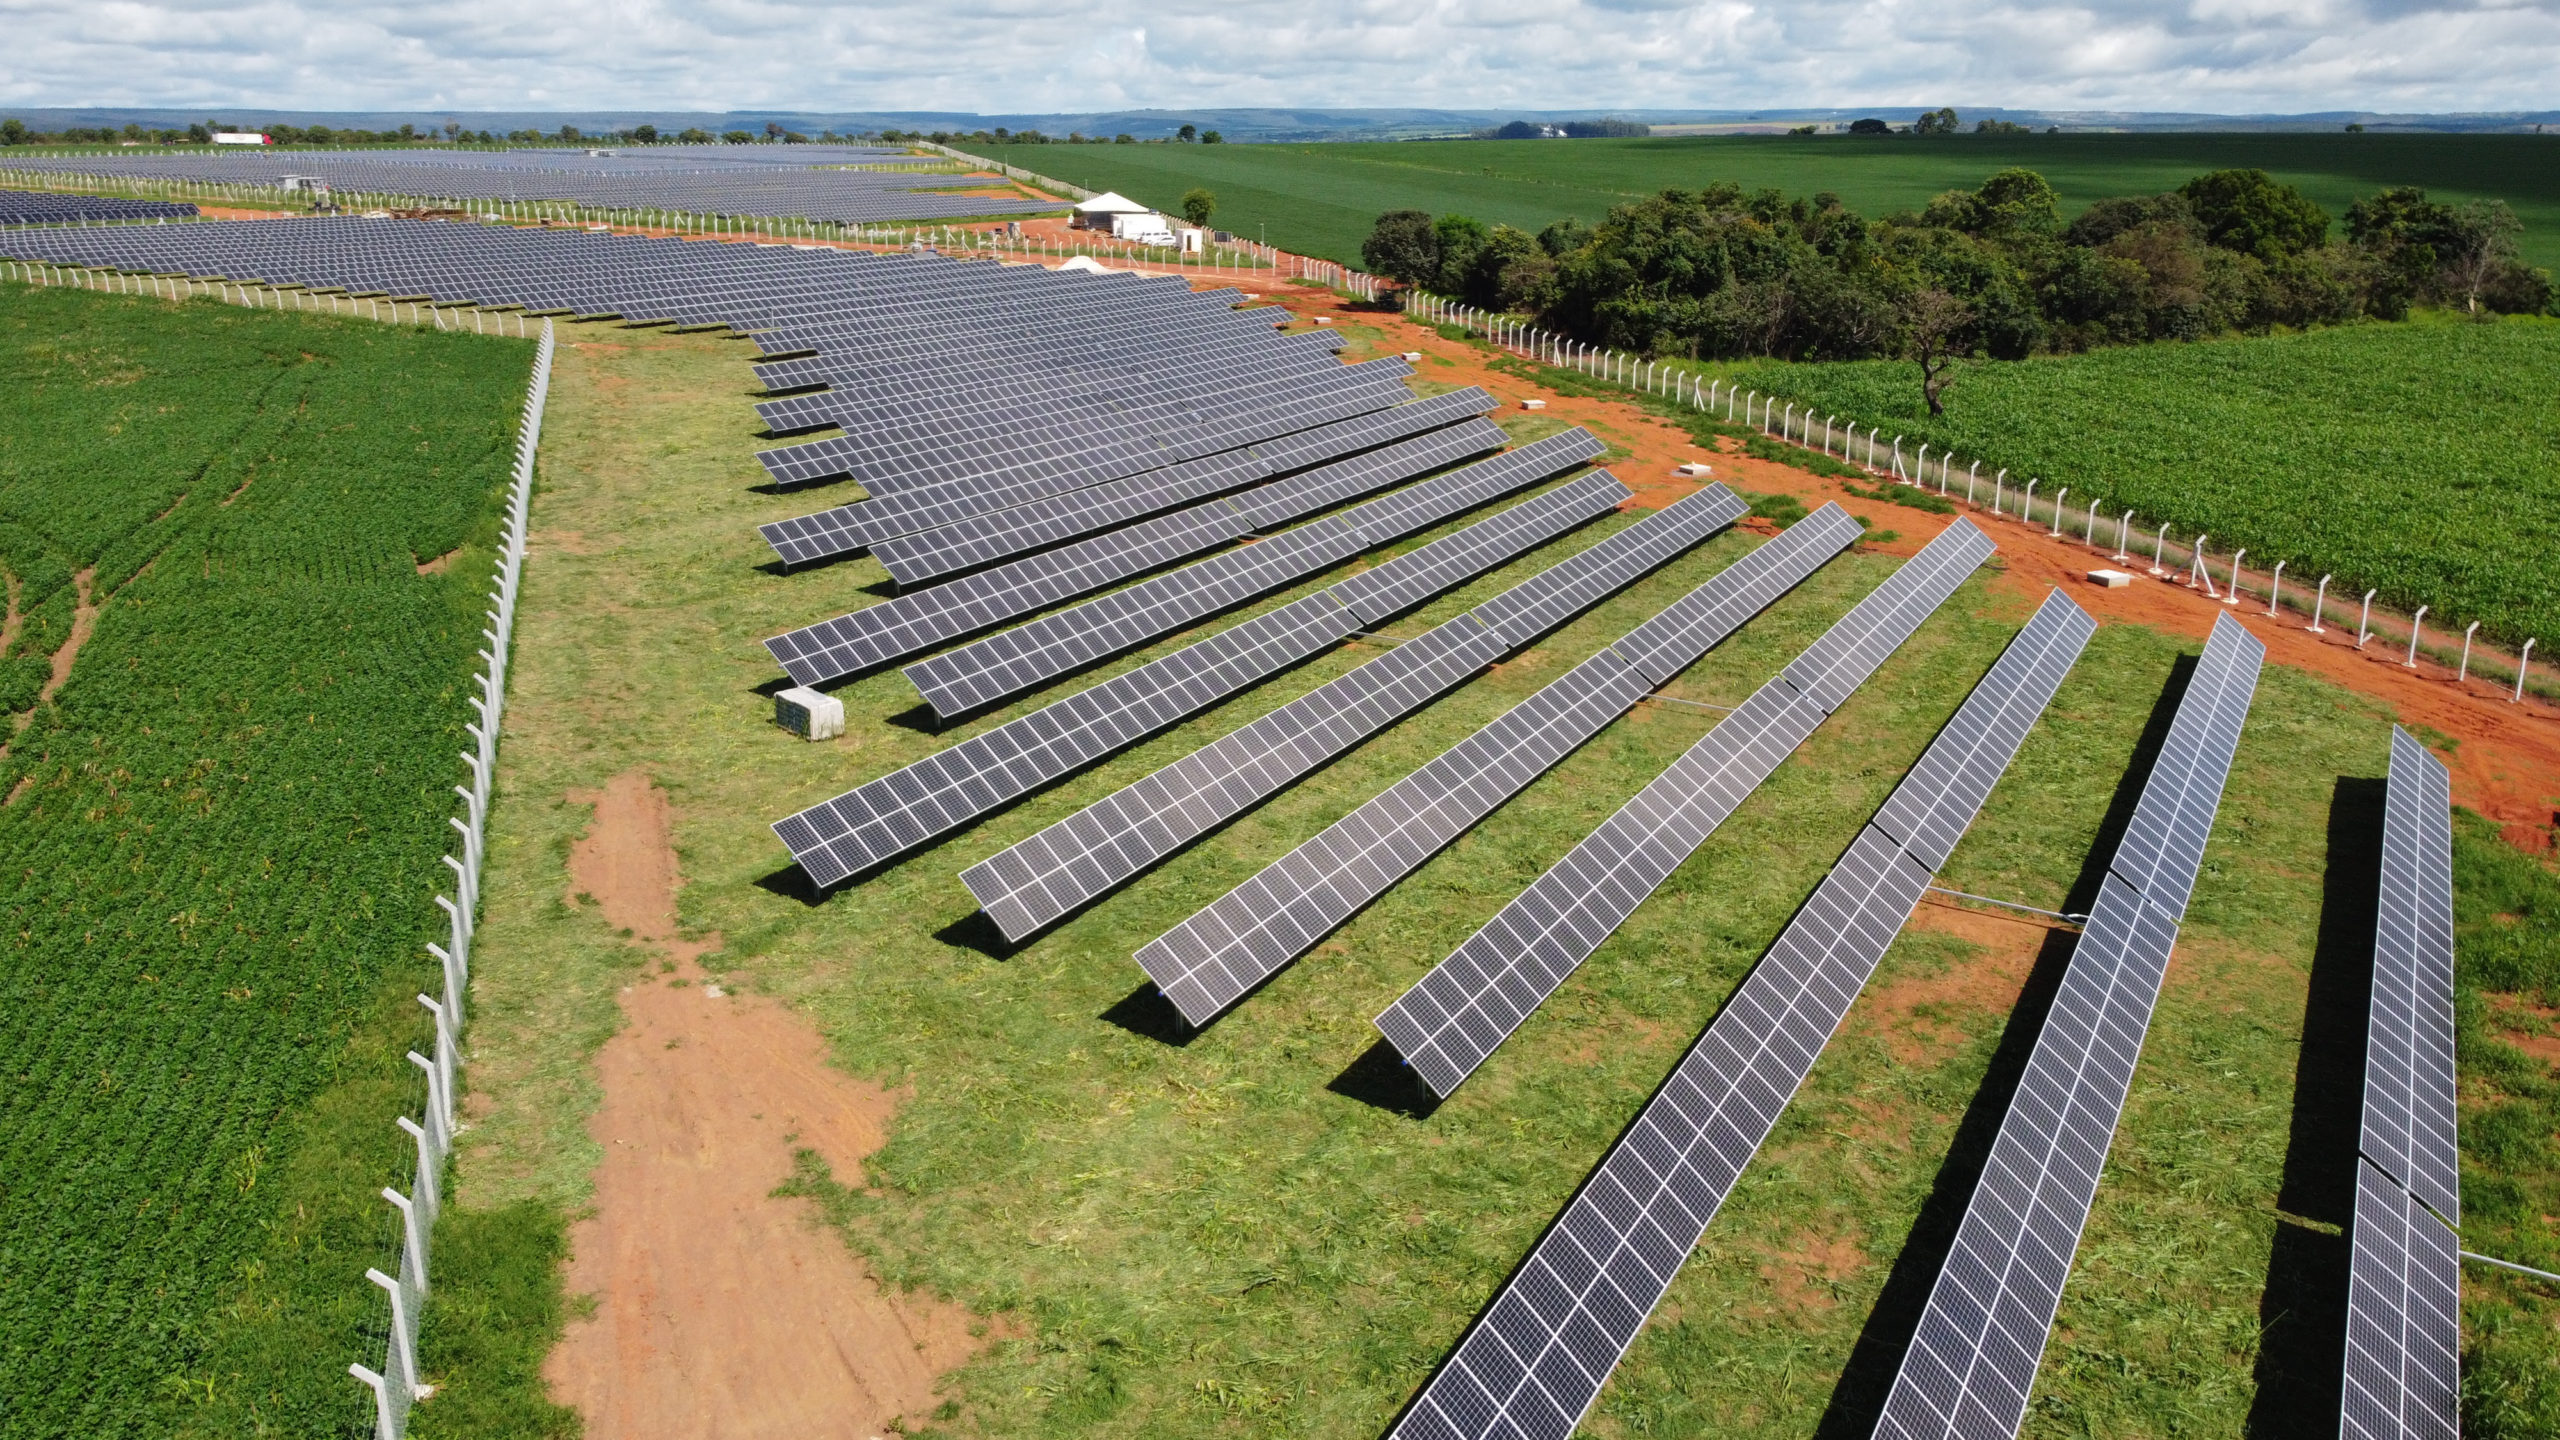 LUZ expande fornecimento de energia solar compartilhada para Brasília. Na imagem: Fazenda solar da LUZ em Brasília, DF (Foto: Divulgação)